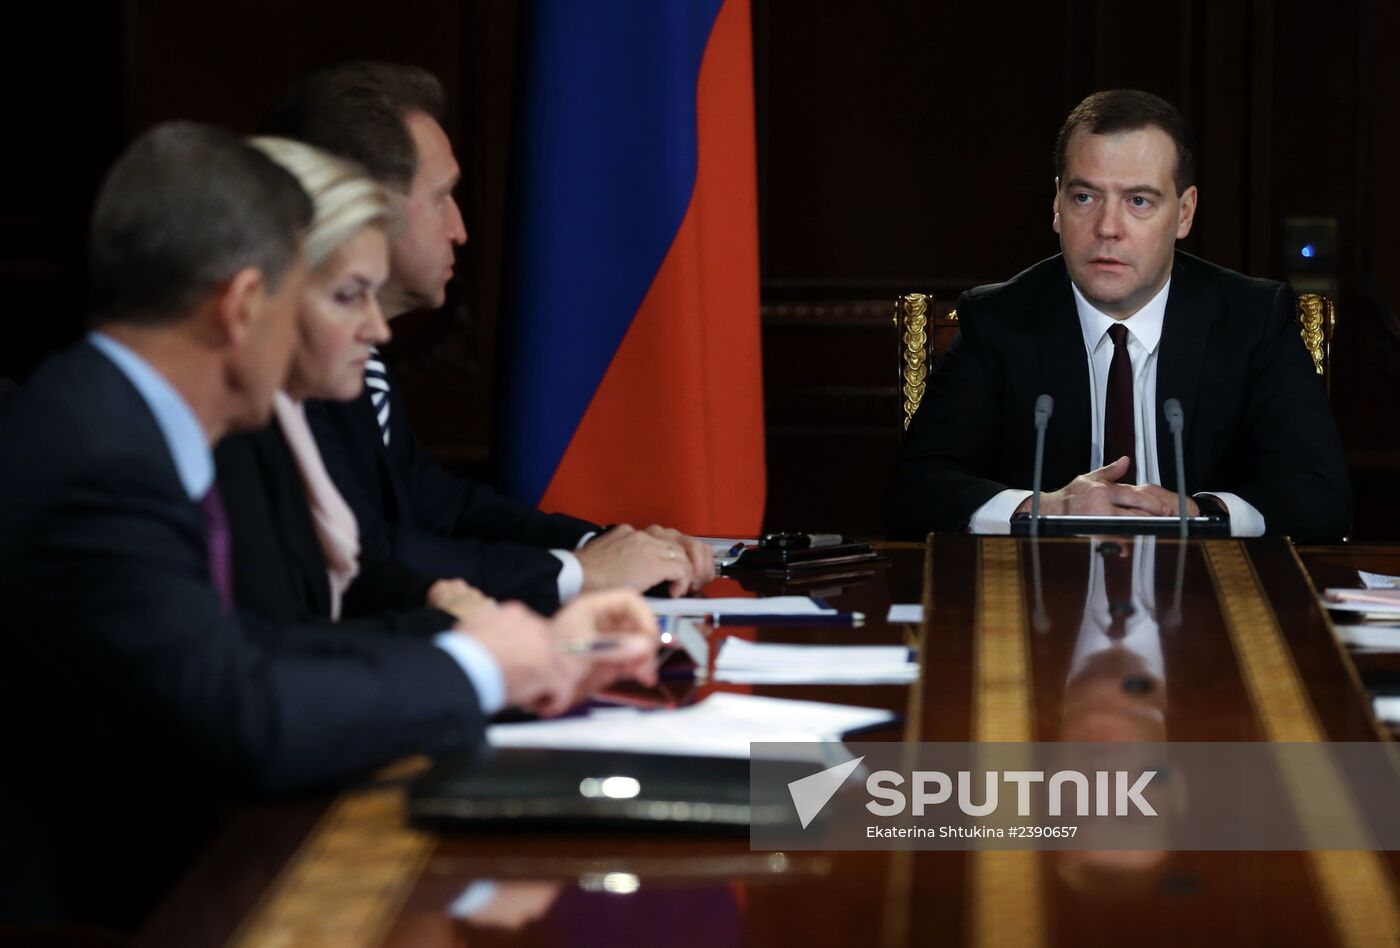 Dmitry Medvedev chairs meeting with his deputies